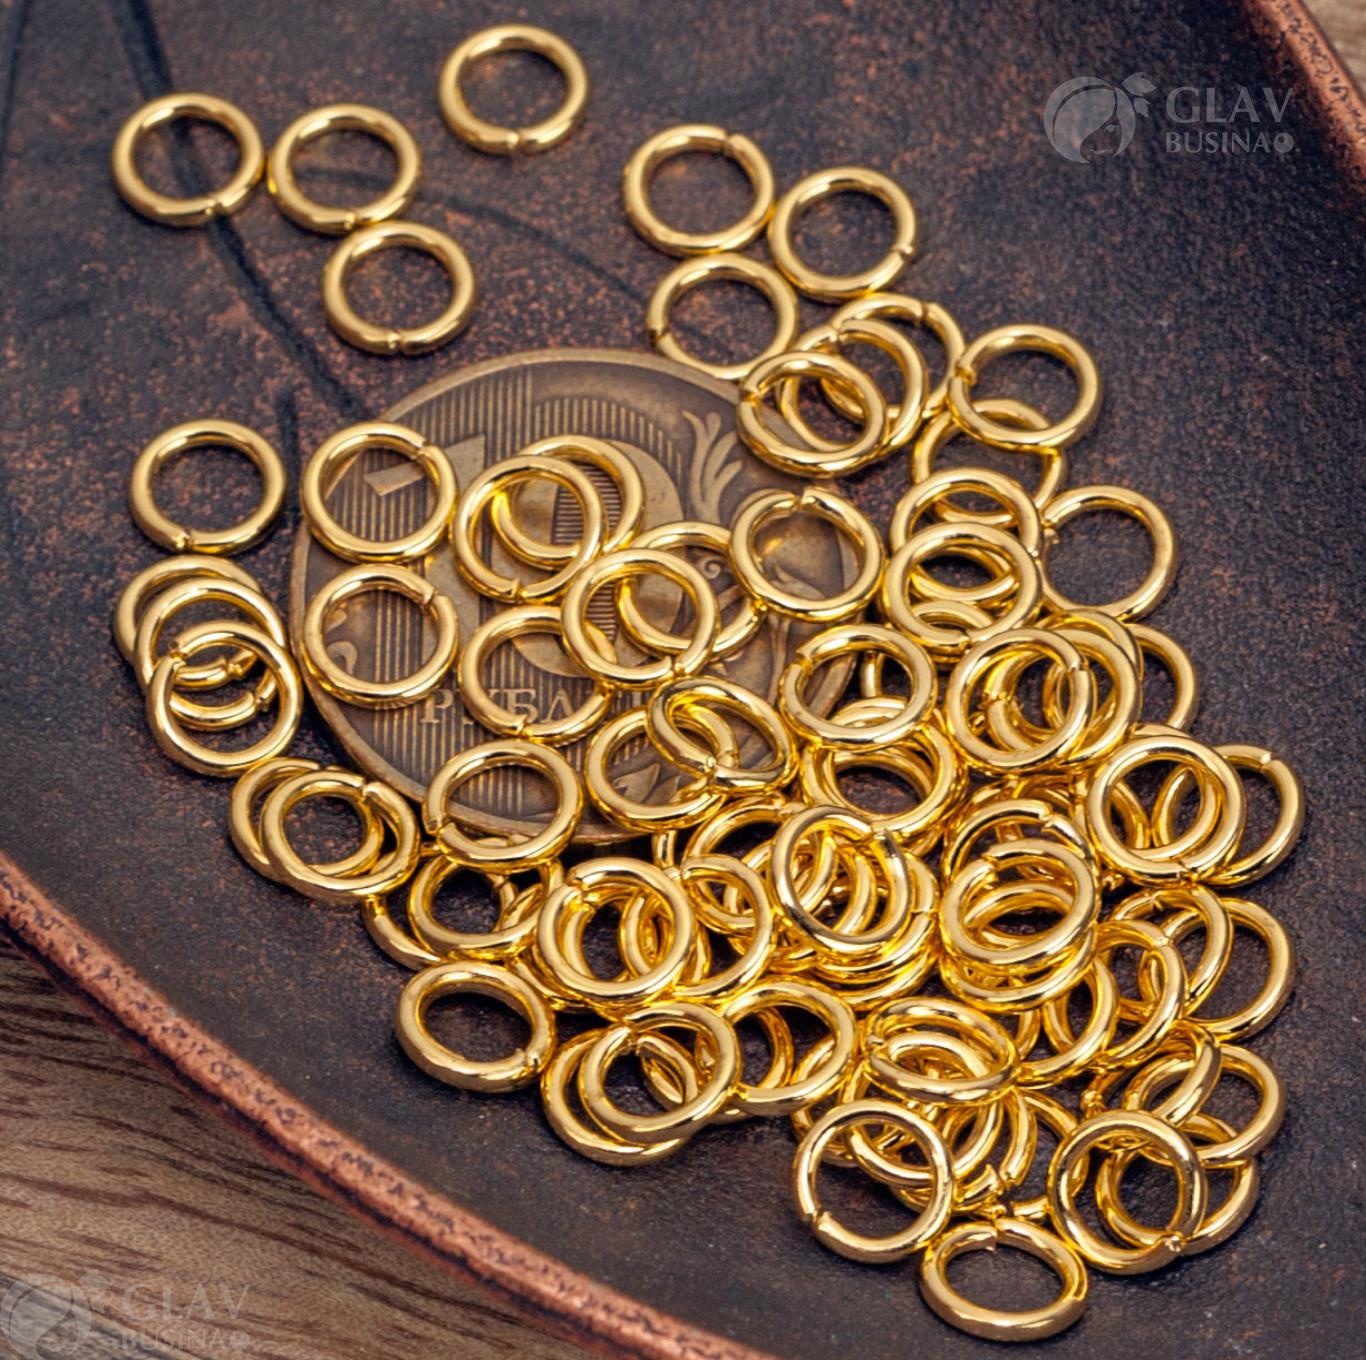 Железные соединительные колечки под цвет желтого золота, размером 6х1мм, вес упаковки 10 грамм, приблизительно 95 штук в комплекте.